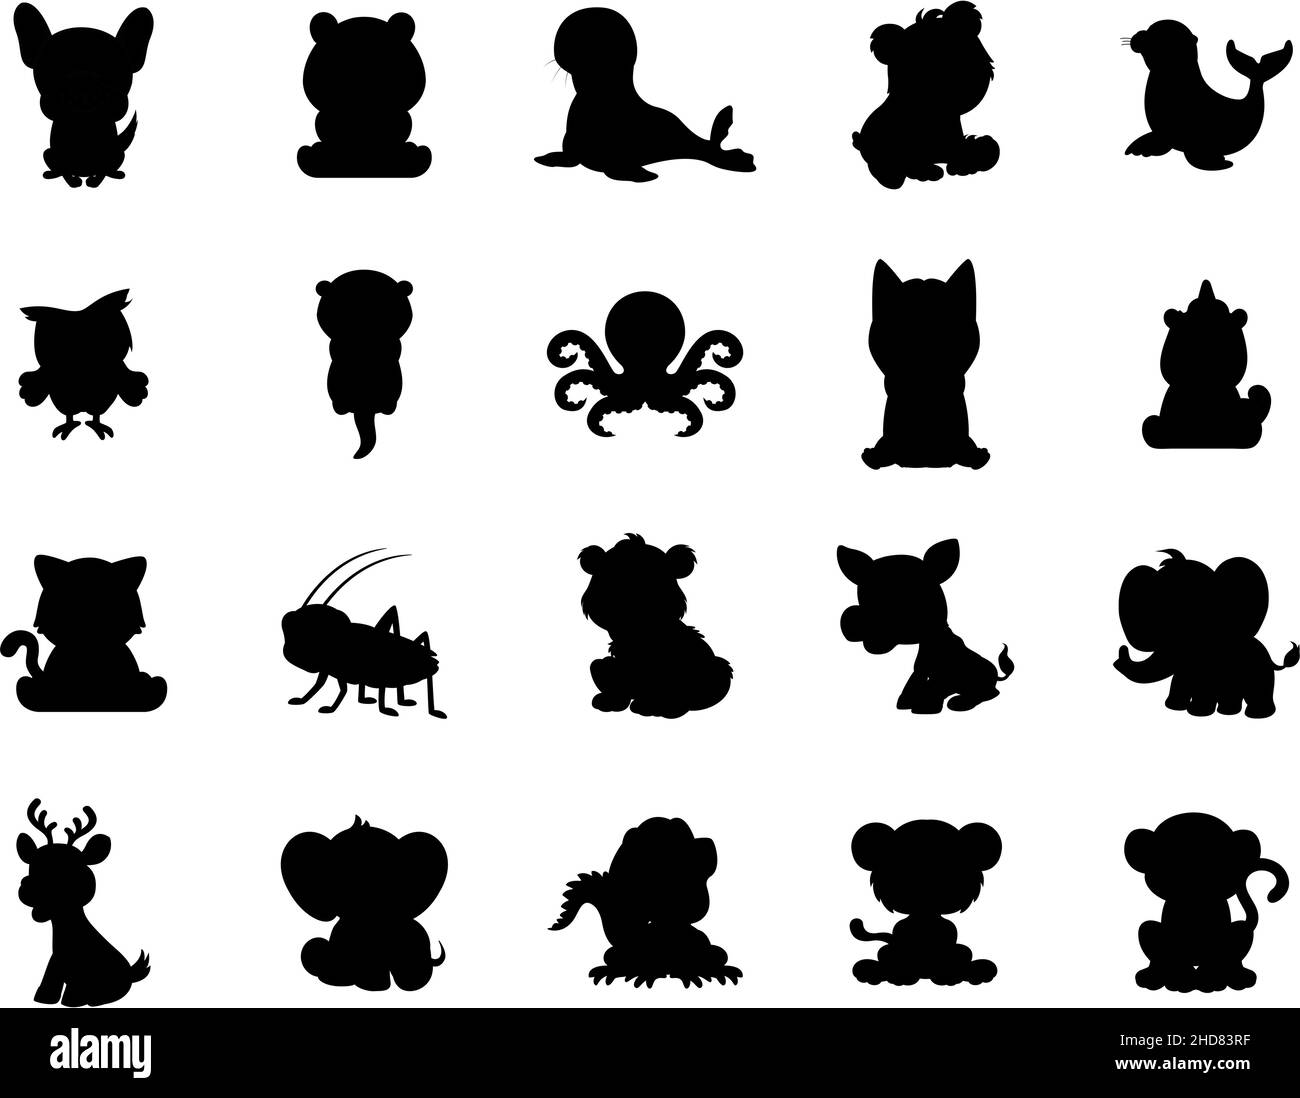 Dessin animé noir Silhouettes ensemble d'animaux de style dessin animé, logos et icônes pour les marques d'animaux Illustration de Vecteur